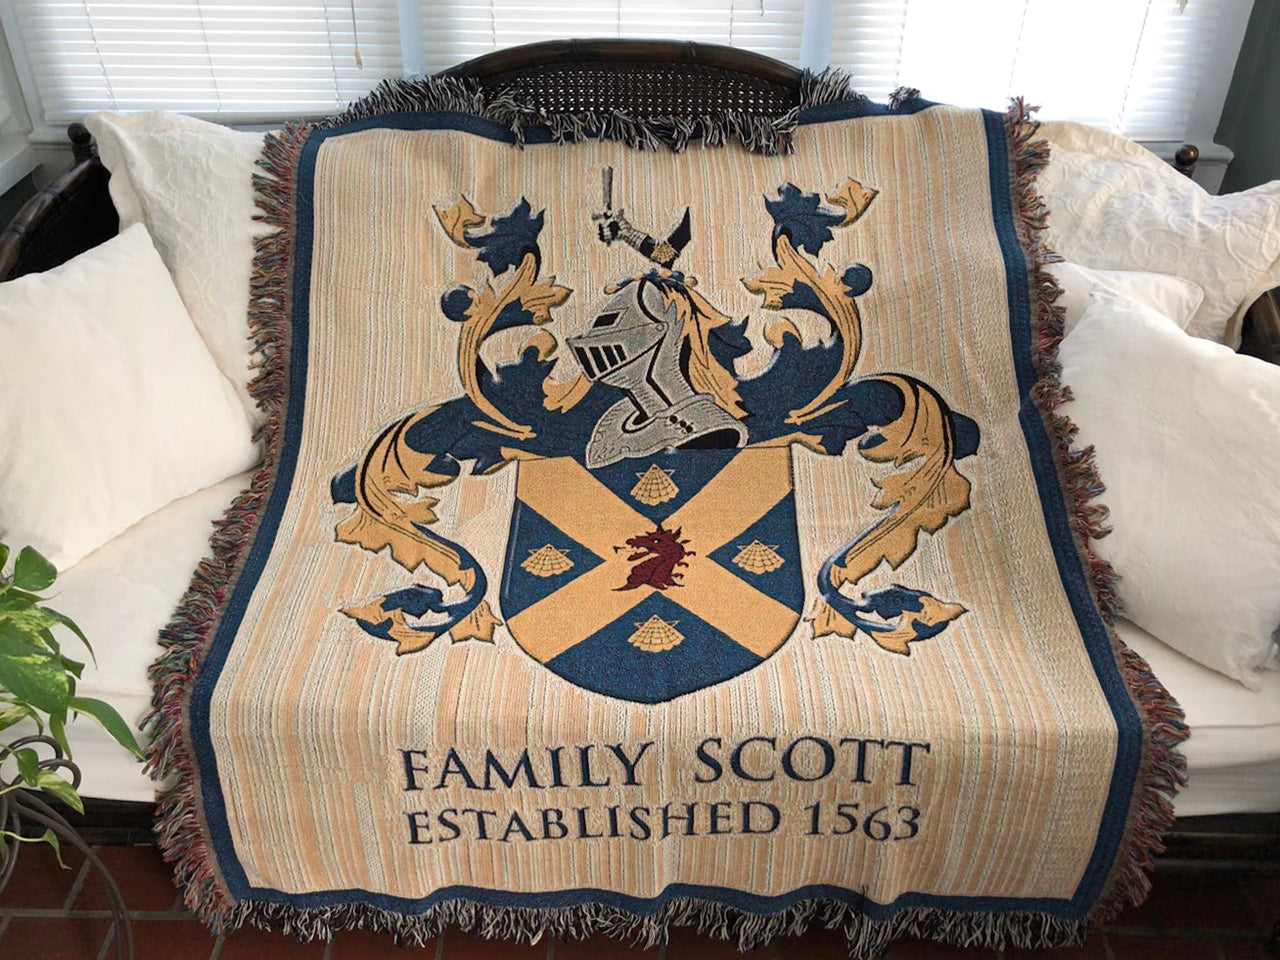 Custom Family Crest Woven Blanket